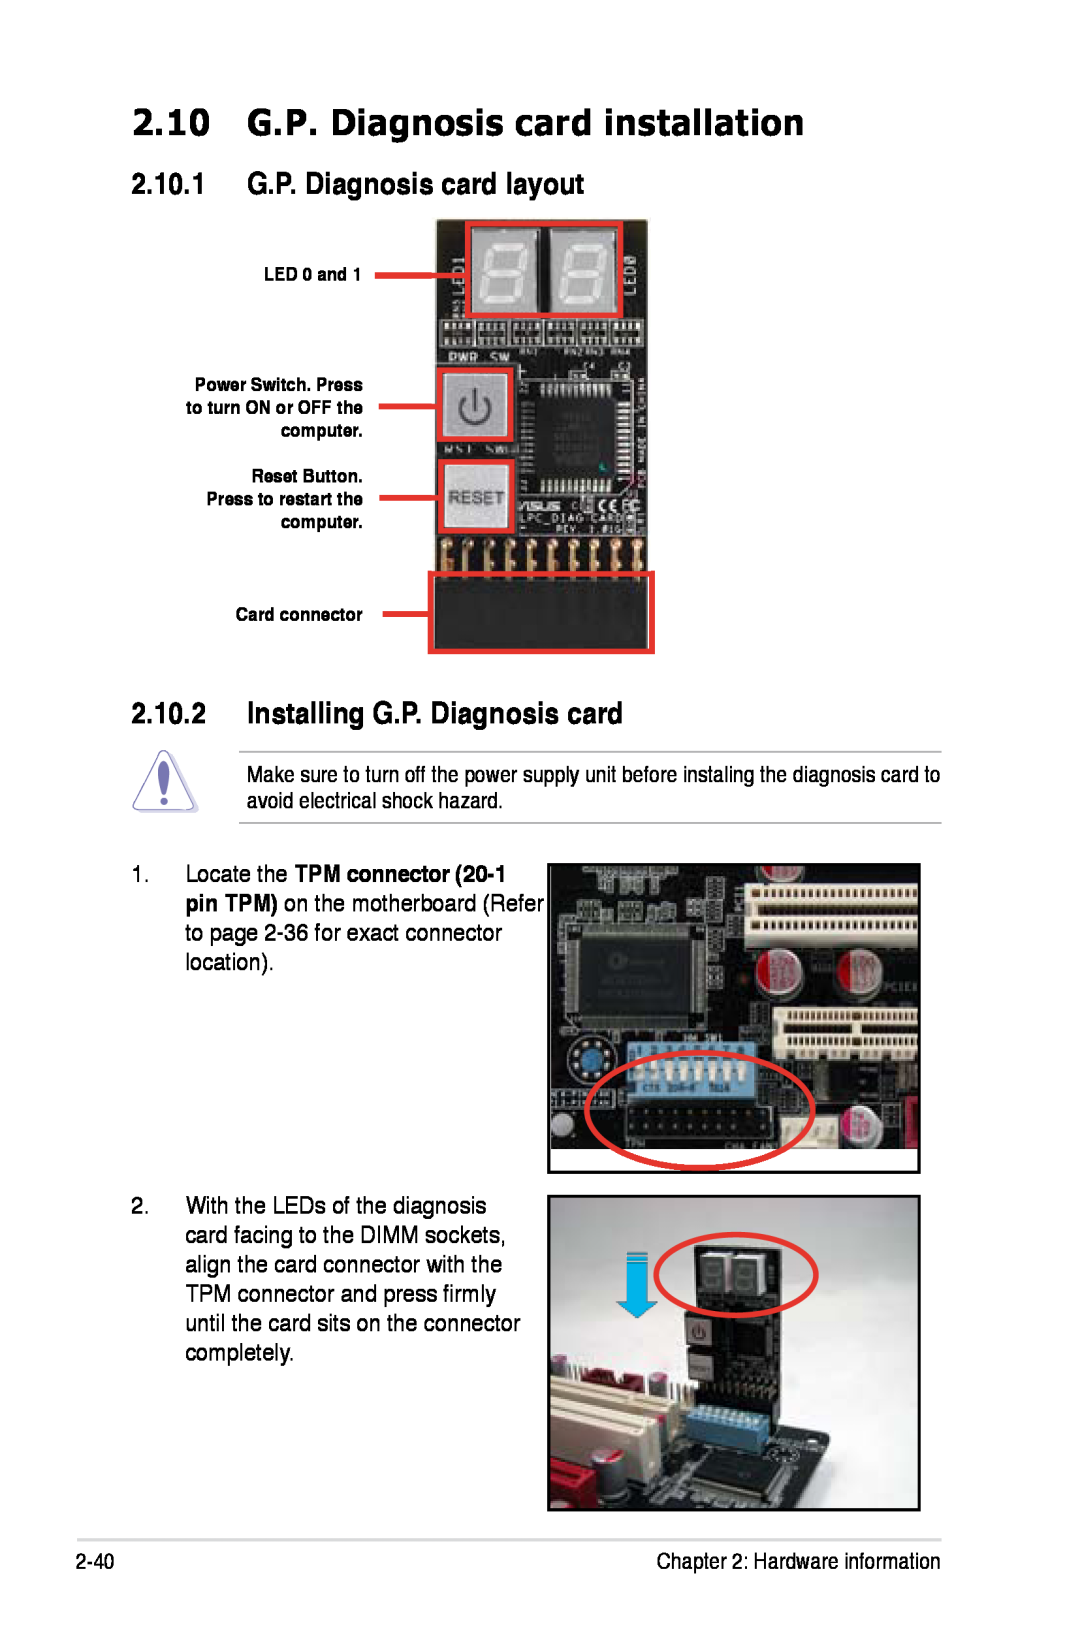 Asus Z7S WS manual 2.10 G.P. Diagnosis card installation, 2.10.1 G.P. Diagnosis card layout, Installing G.P. Diagnosis card 